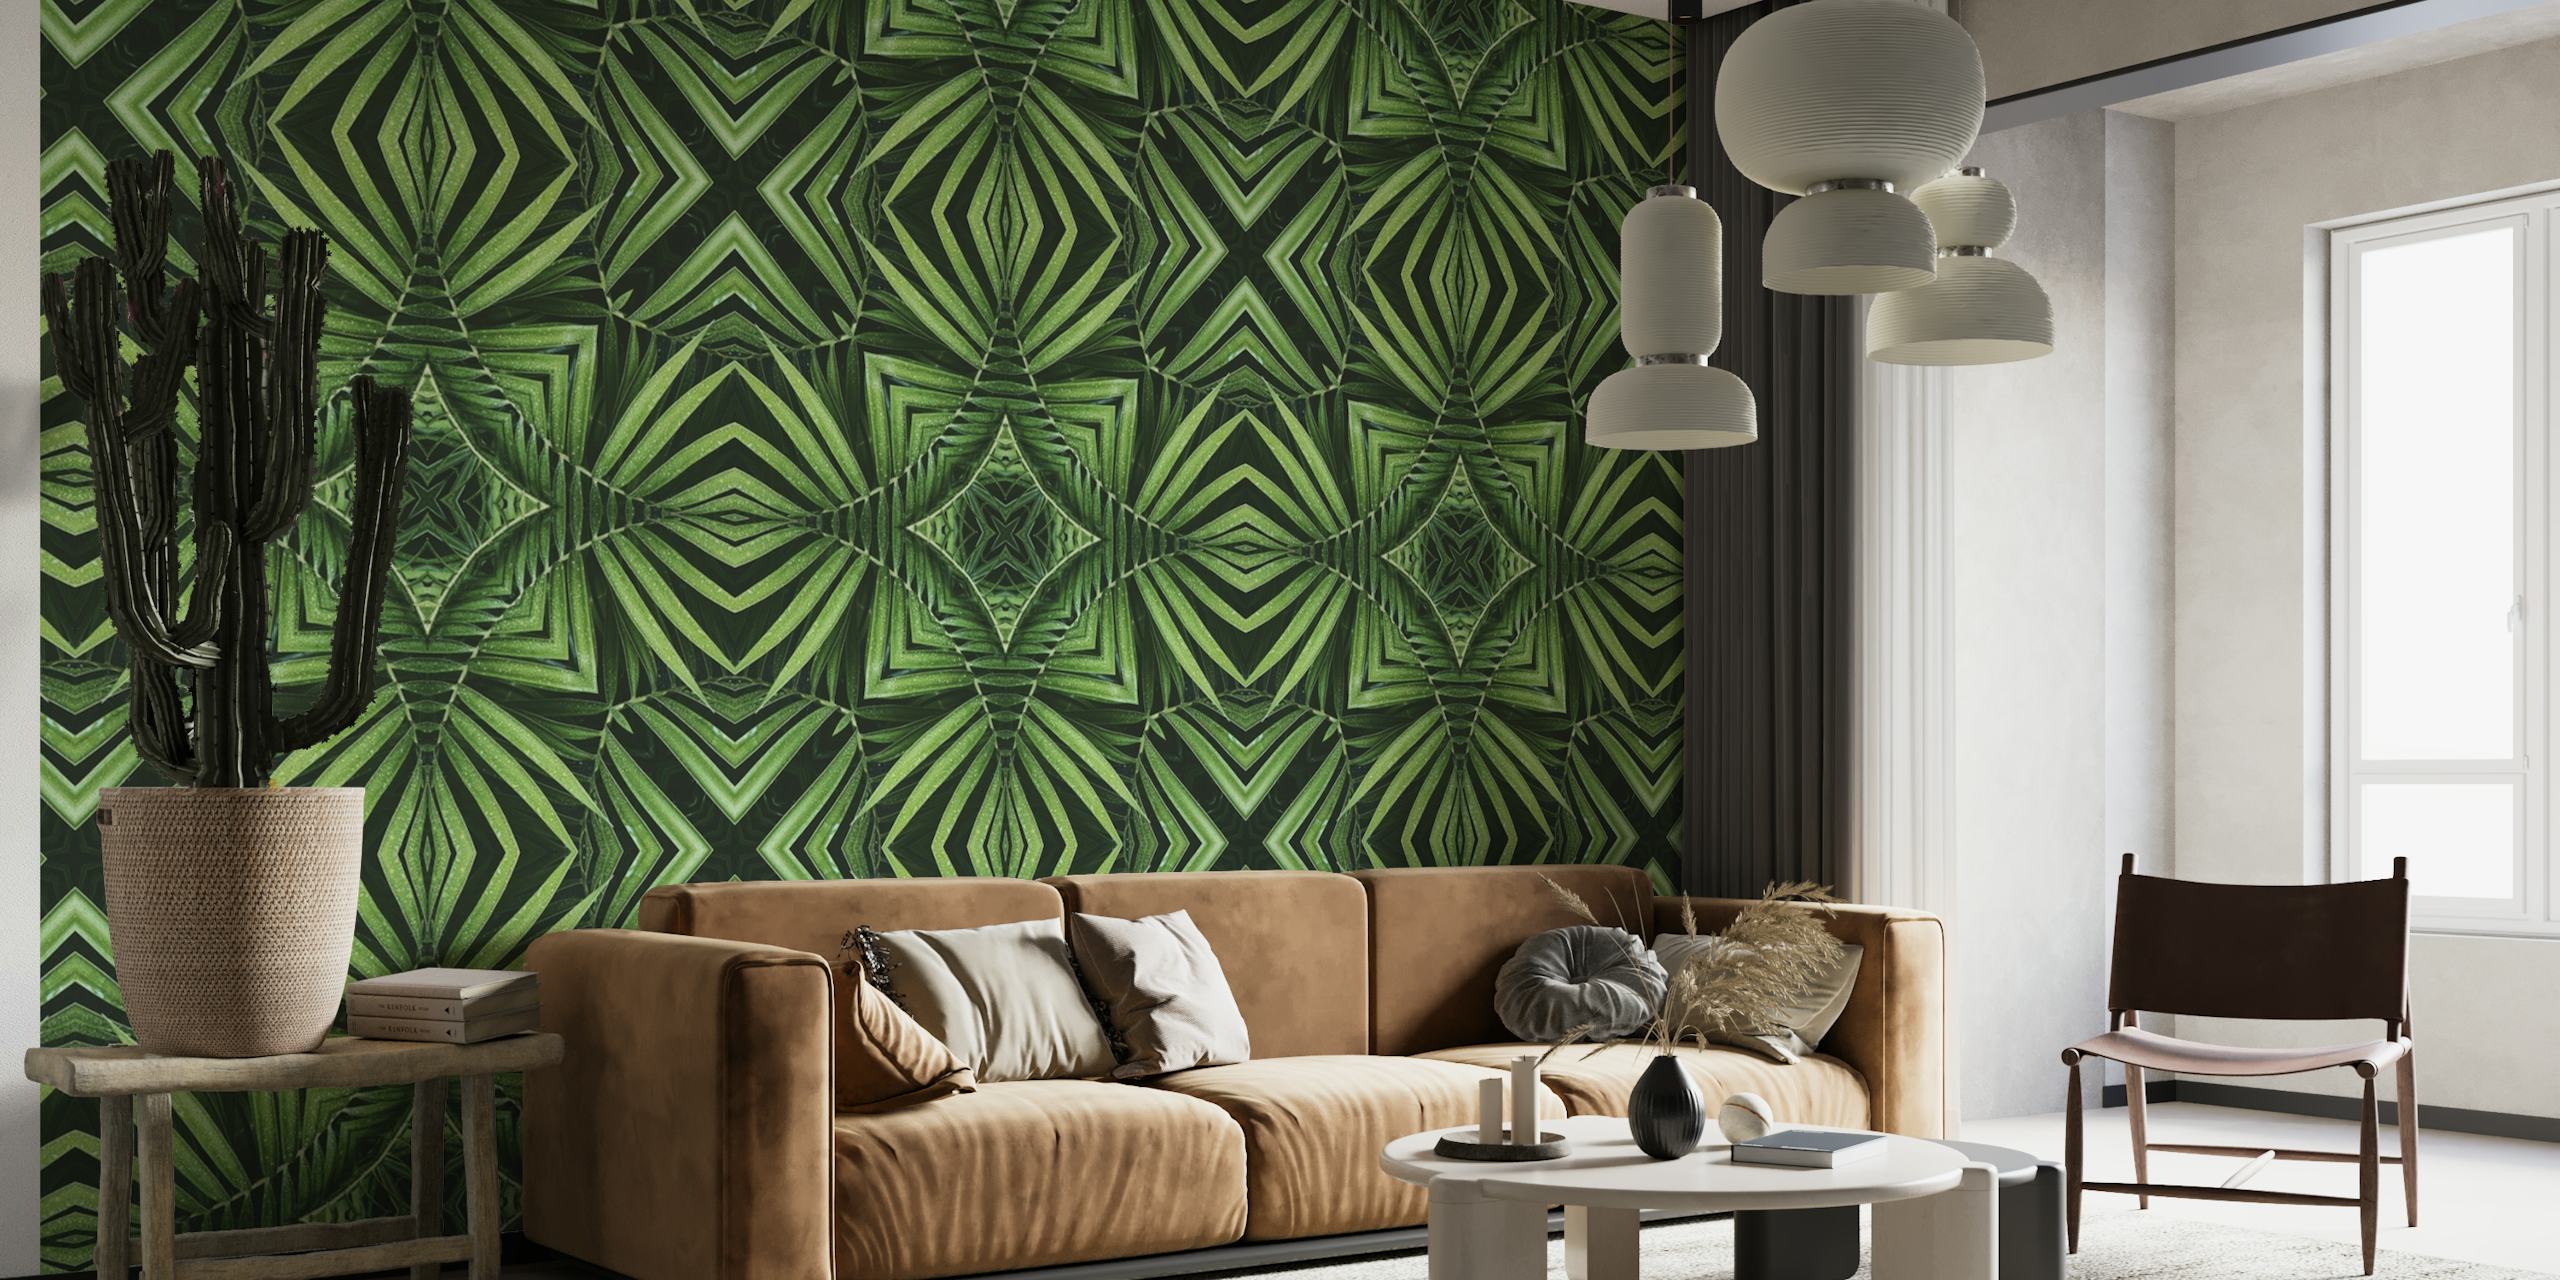 Tropische groene jungle tegel patroon muurschildering